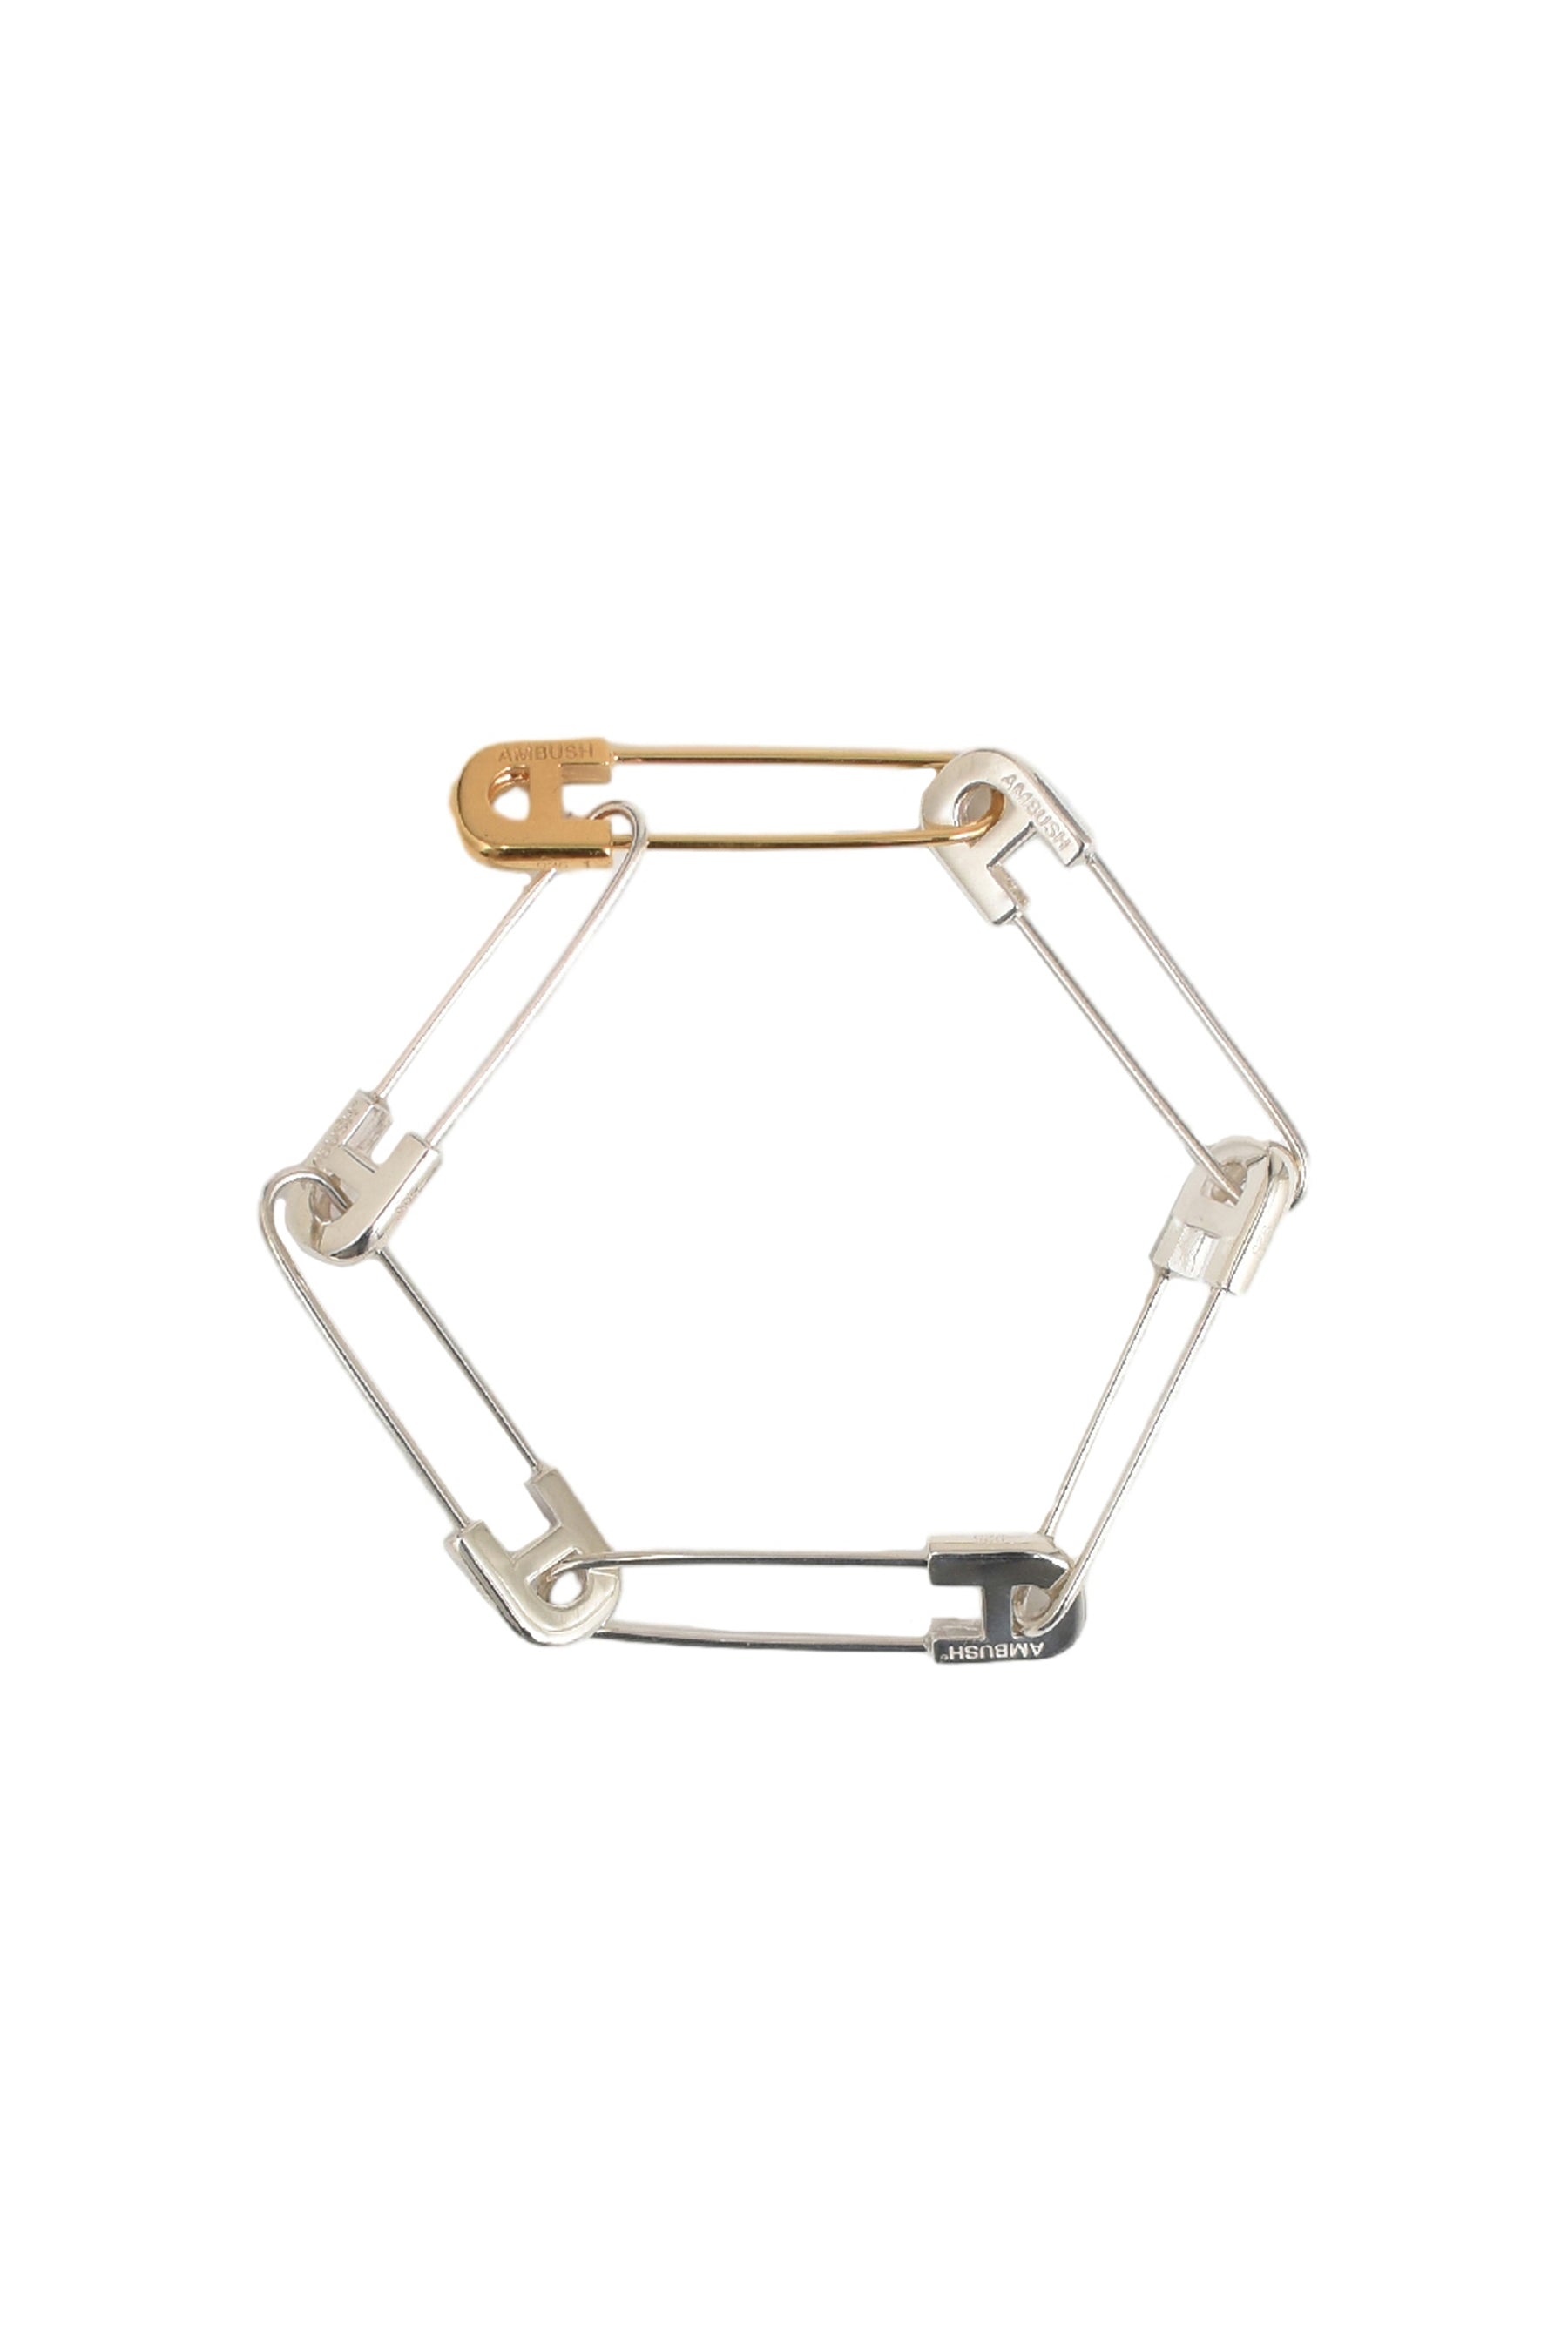 Safety Pin Bracelet – The Gold Supply